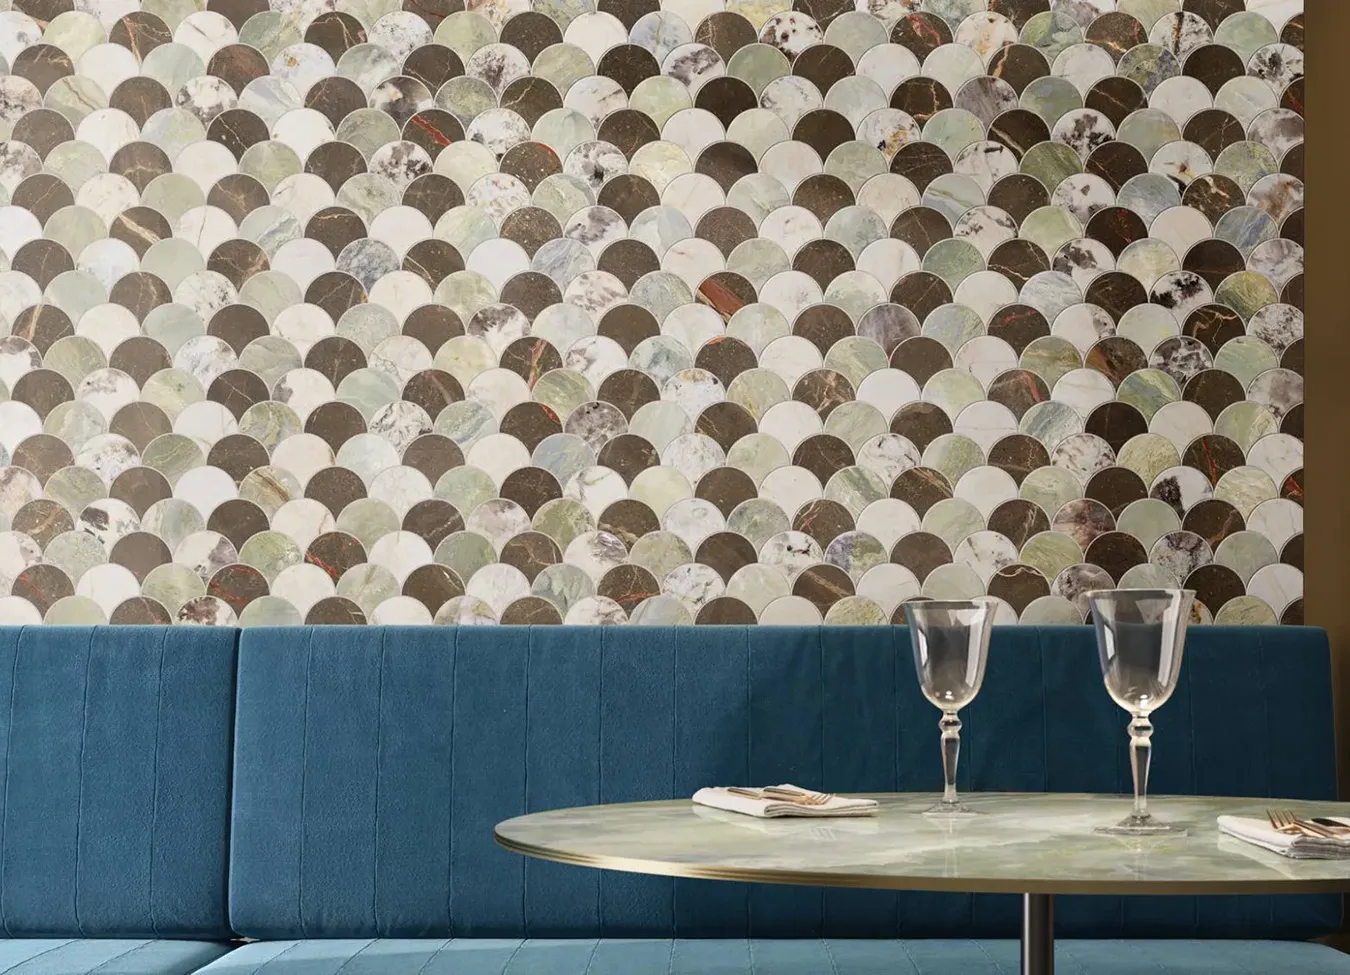 Wand aus Steinzeug in Marmoreffekt mit Mosaikdesign aus der 9cento-Kollektion in einem stilvollen Restaurantambiente.